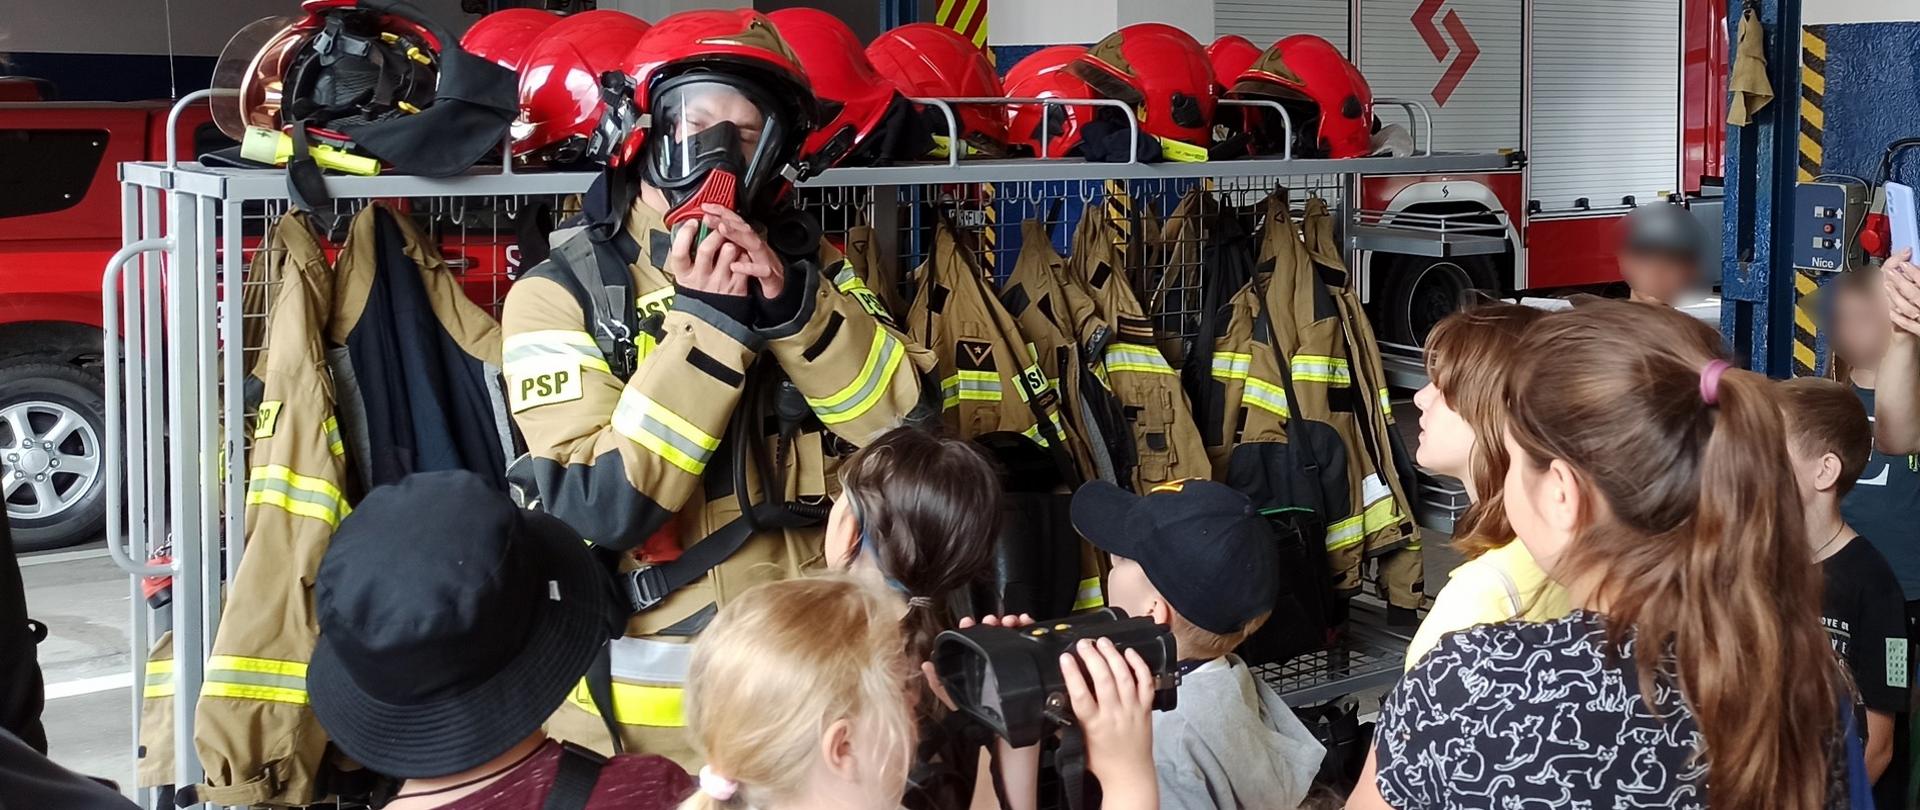 Zdjęcie przedstawia strażaka JRG Brodnica prezentującego obrania oraz sprzęt zabezpieczający podczas działań ratowniczo-gaśniczych. Przed strażakiem stoją zgromadzone dzieci.